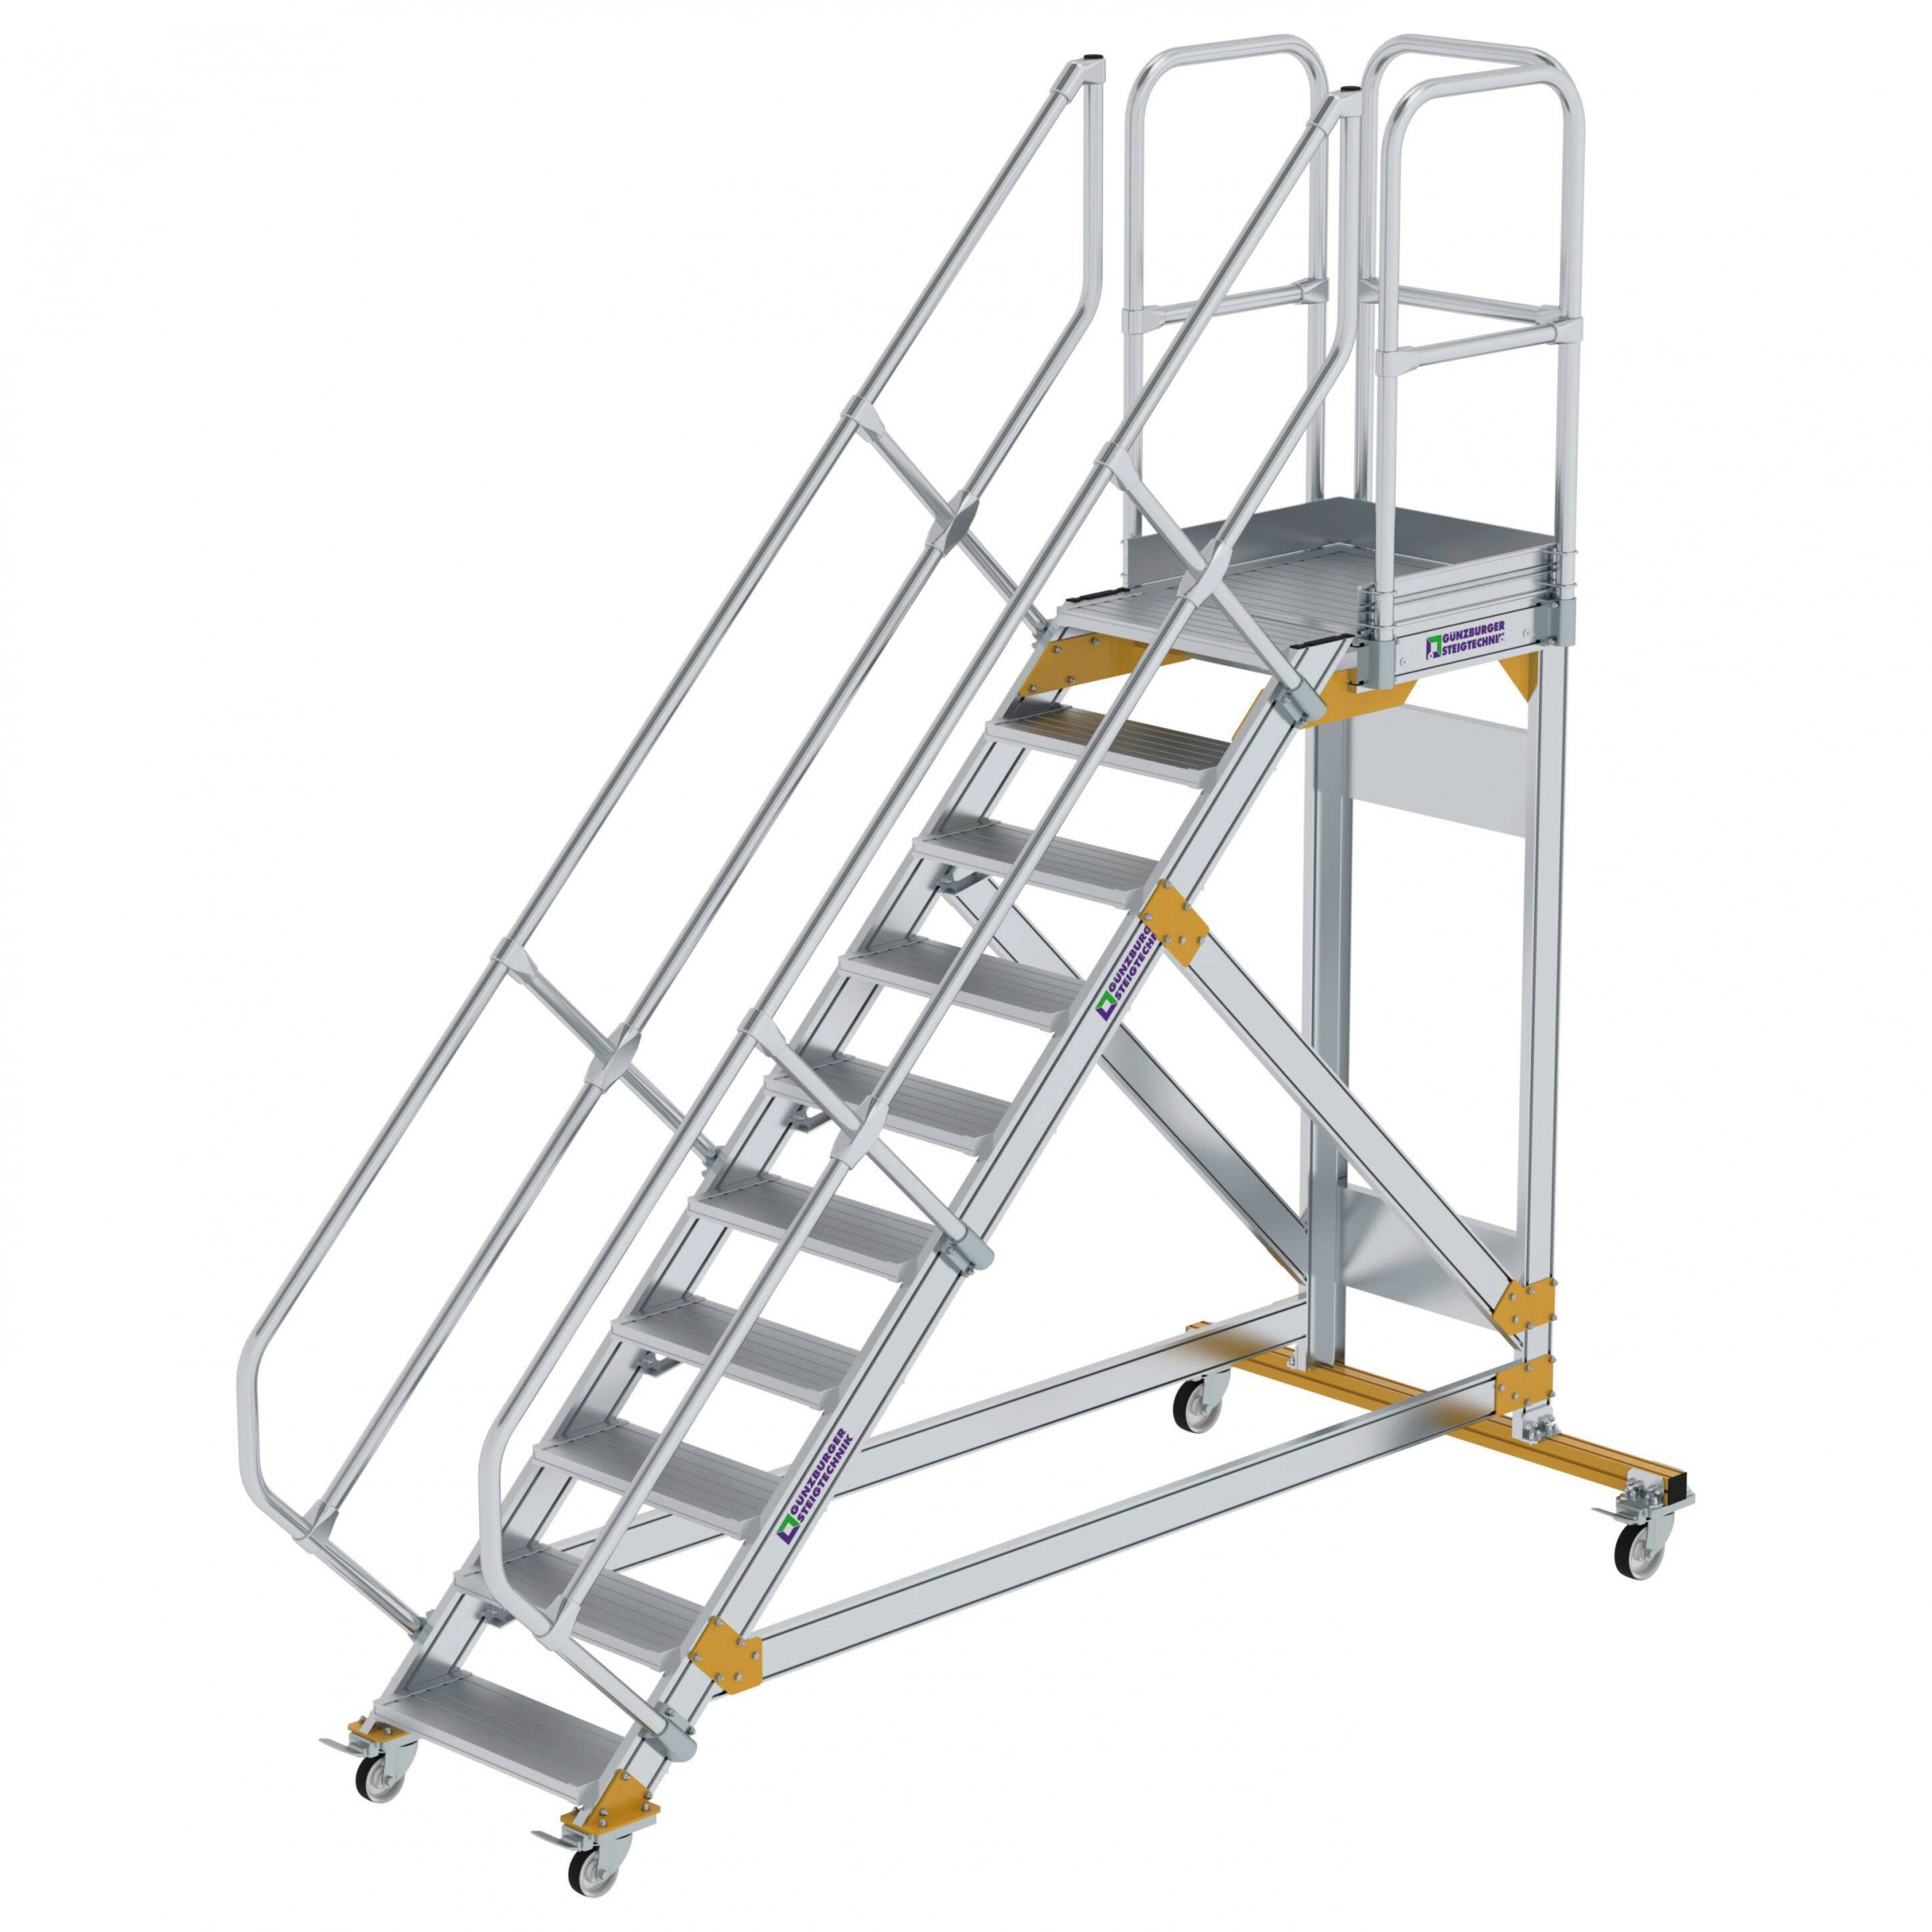 Aluminium-Plattform-Treppe fahrbar 45°, Stufenbreite 600 mm, 4 Stufen